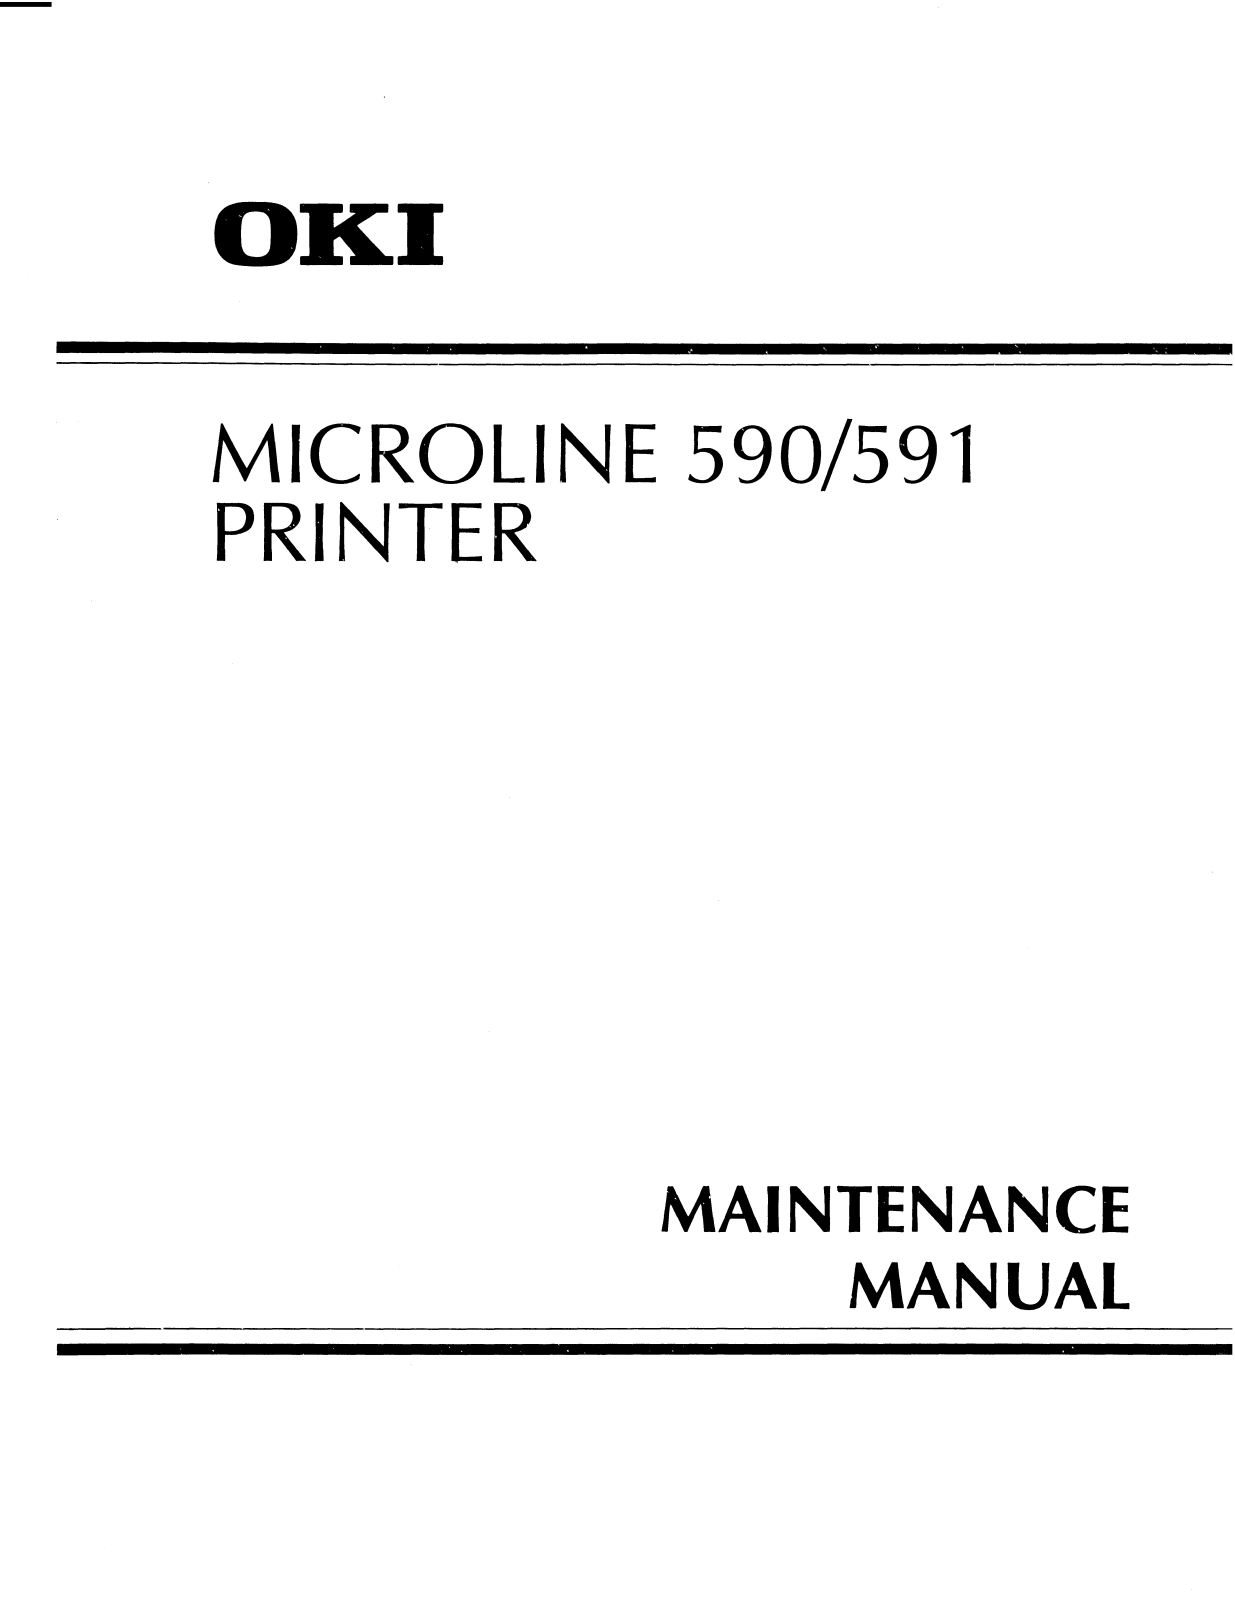 OKI 590, 591 Service manual